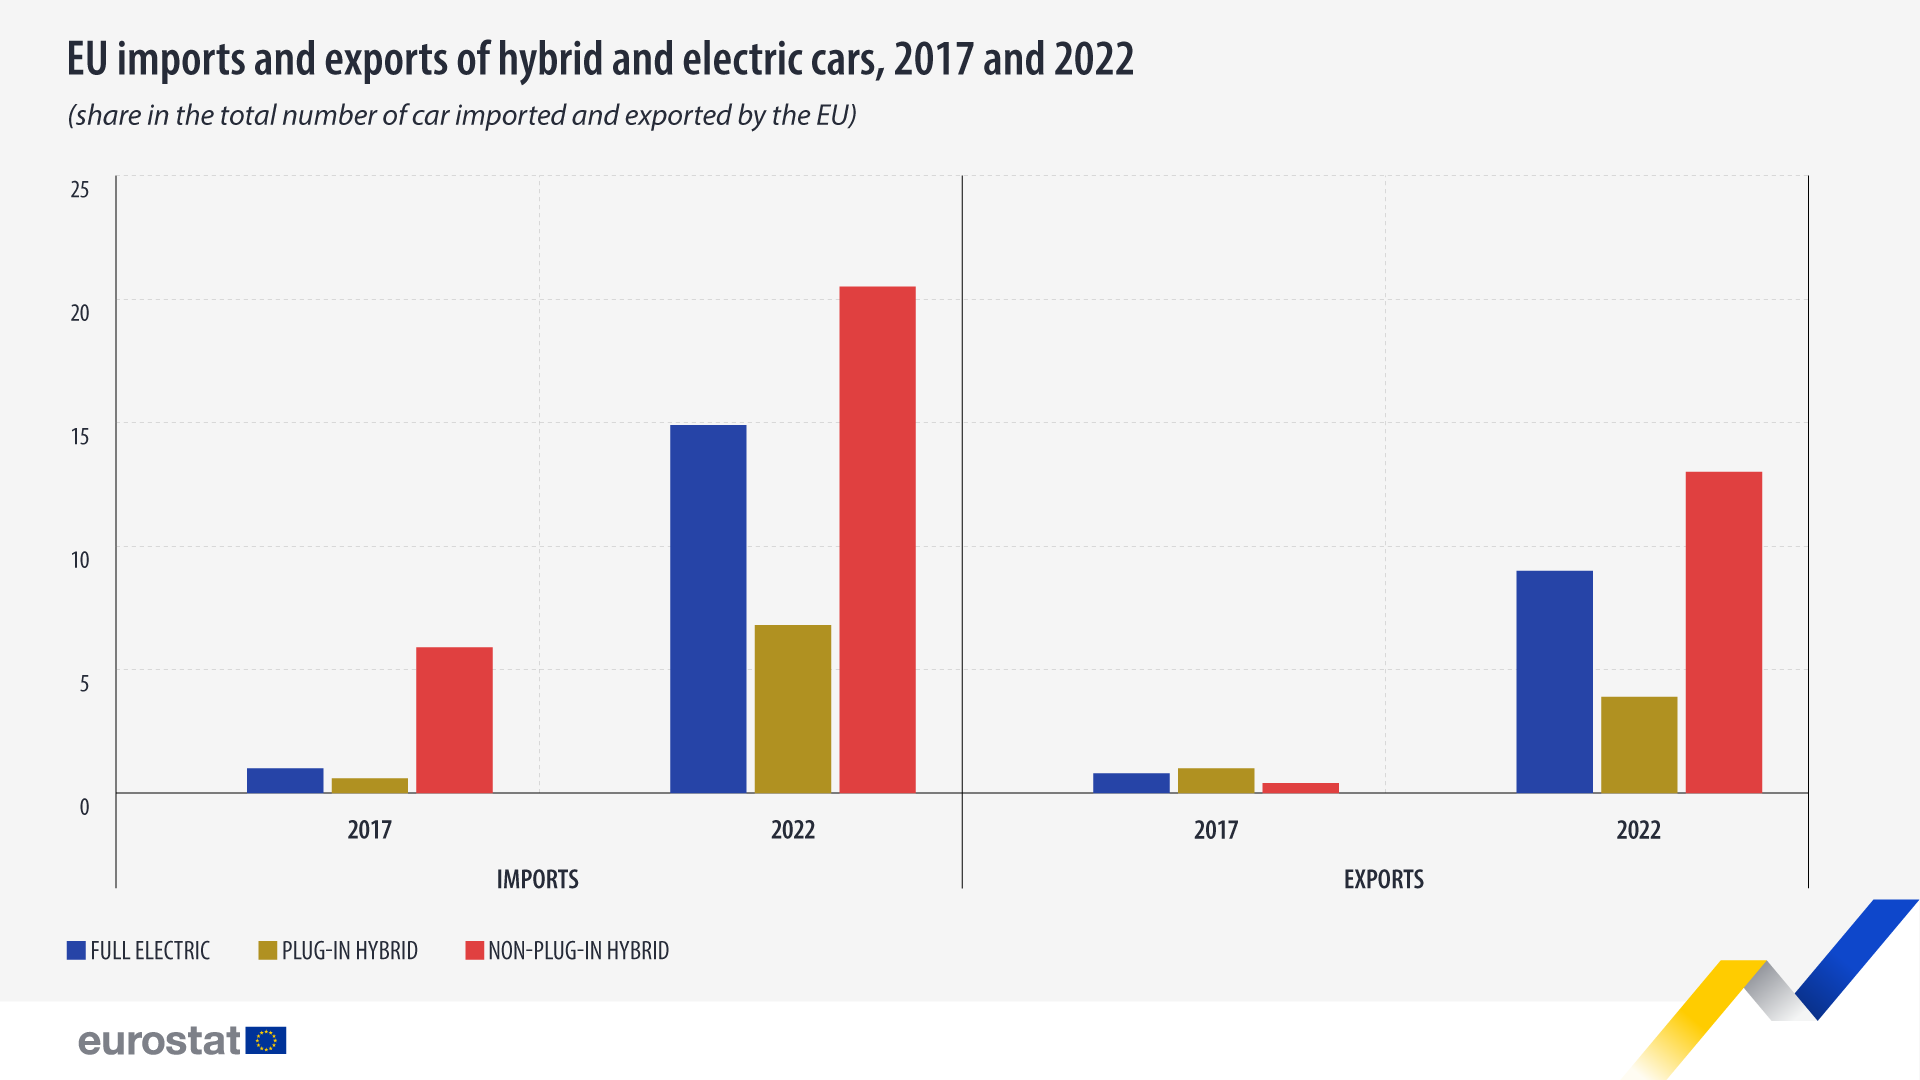 Διάγραμμα ράβδων: εισαγωγές και εξαγωγές υβριδικών και ηλεκτρικών αυτοκινήτων στην ΕΕ, το 2017 και το 2022, μερίδιο στον συνολικό αριθμό αυτοκινήτων που εισάγονται και εξάγονται από την ΕΕ